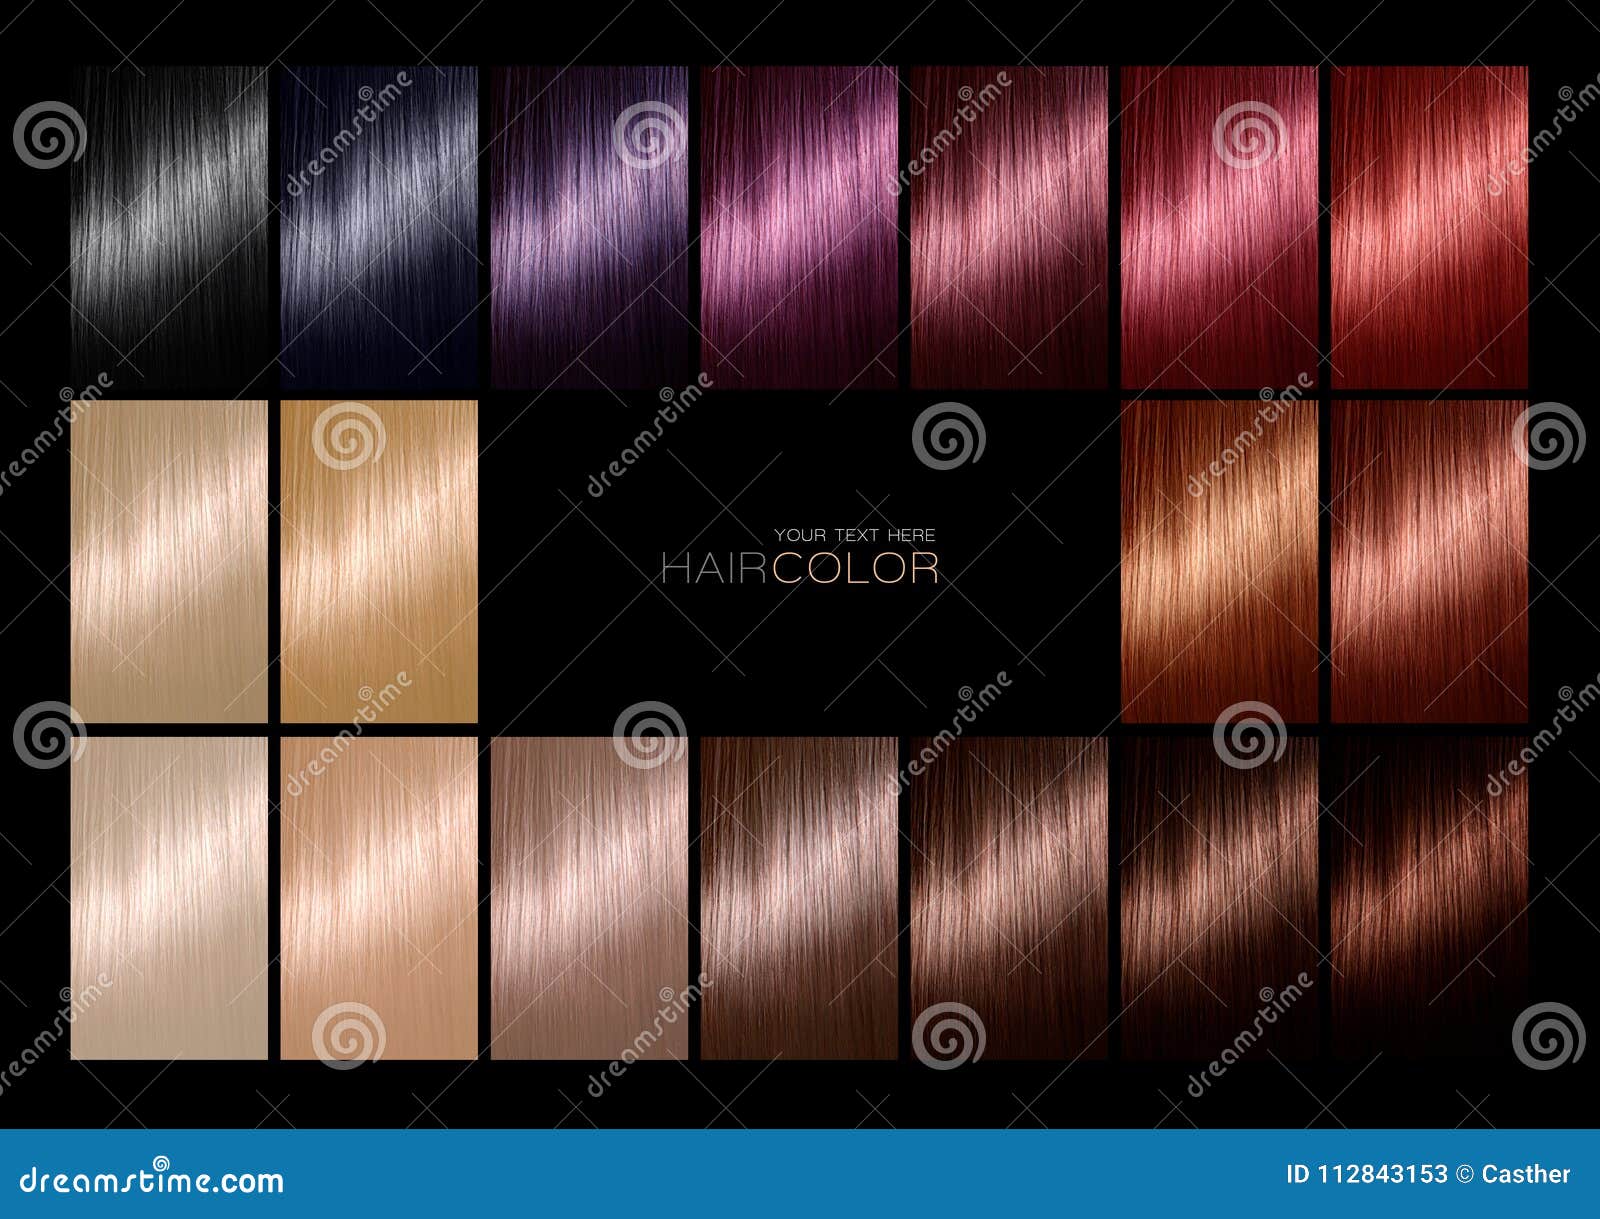 Goed smog Oppervlakte Kleurengrafiek Voor Haarverf Tinten Het Palet Van De Haarkleur Met Een  Waaier Stock Afbeelding - Image of palet, ontwerp: 112843153